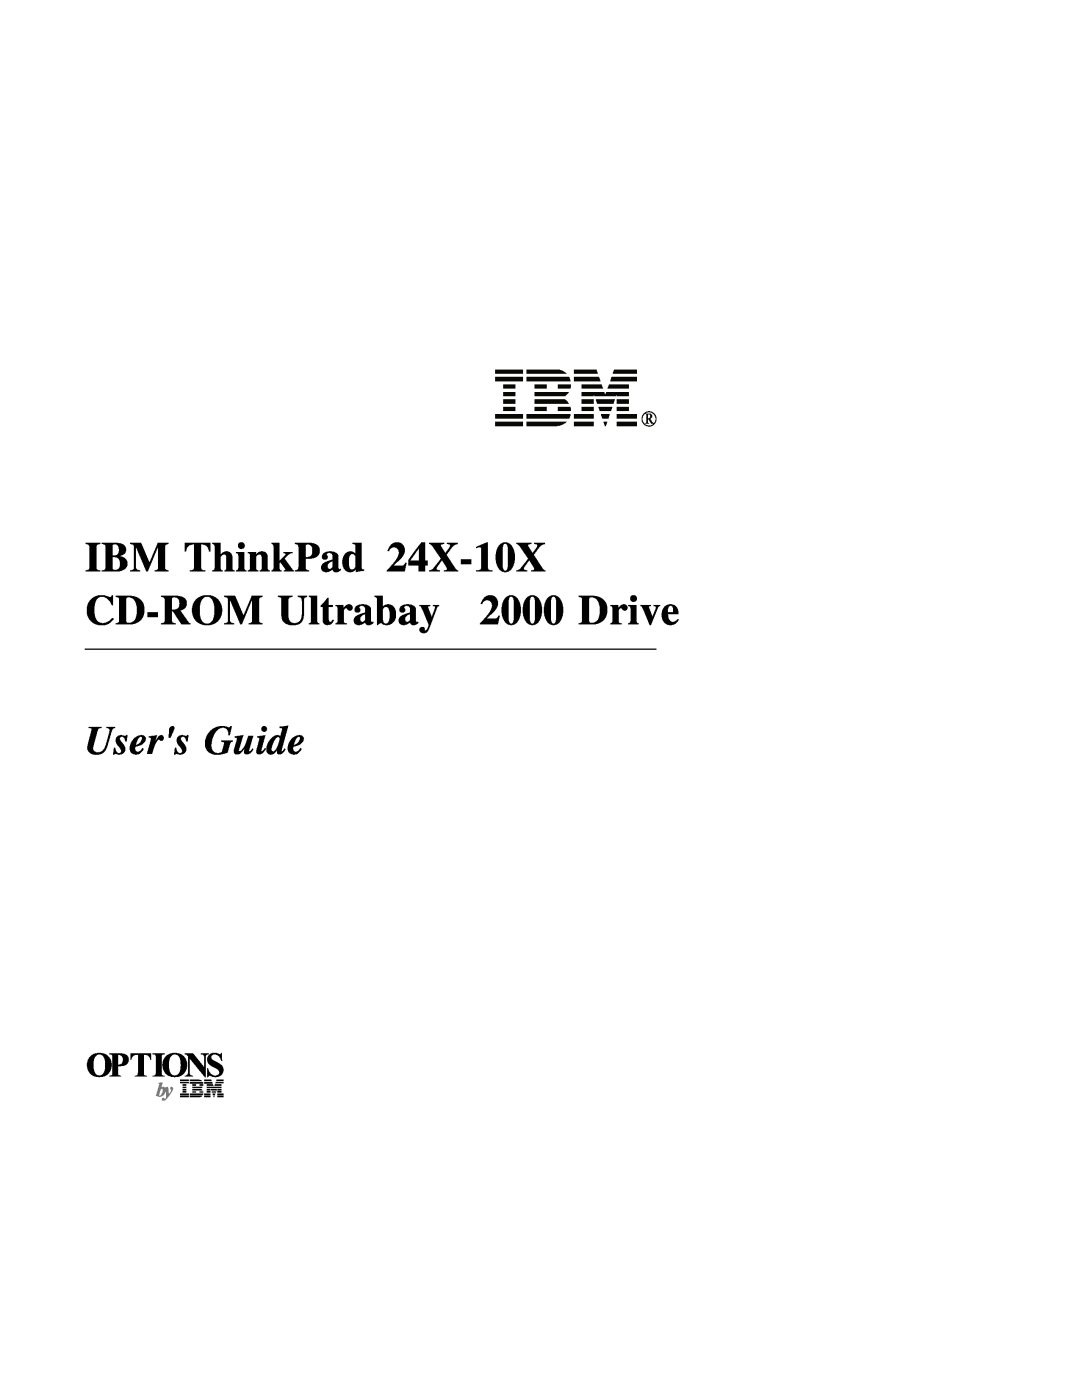 IBM manual IBM ThinkPad 24X-10X CD-ROM Ultrabay 2000 Drive, Users Guide 